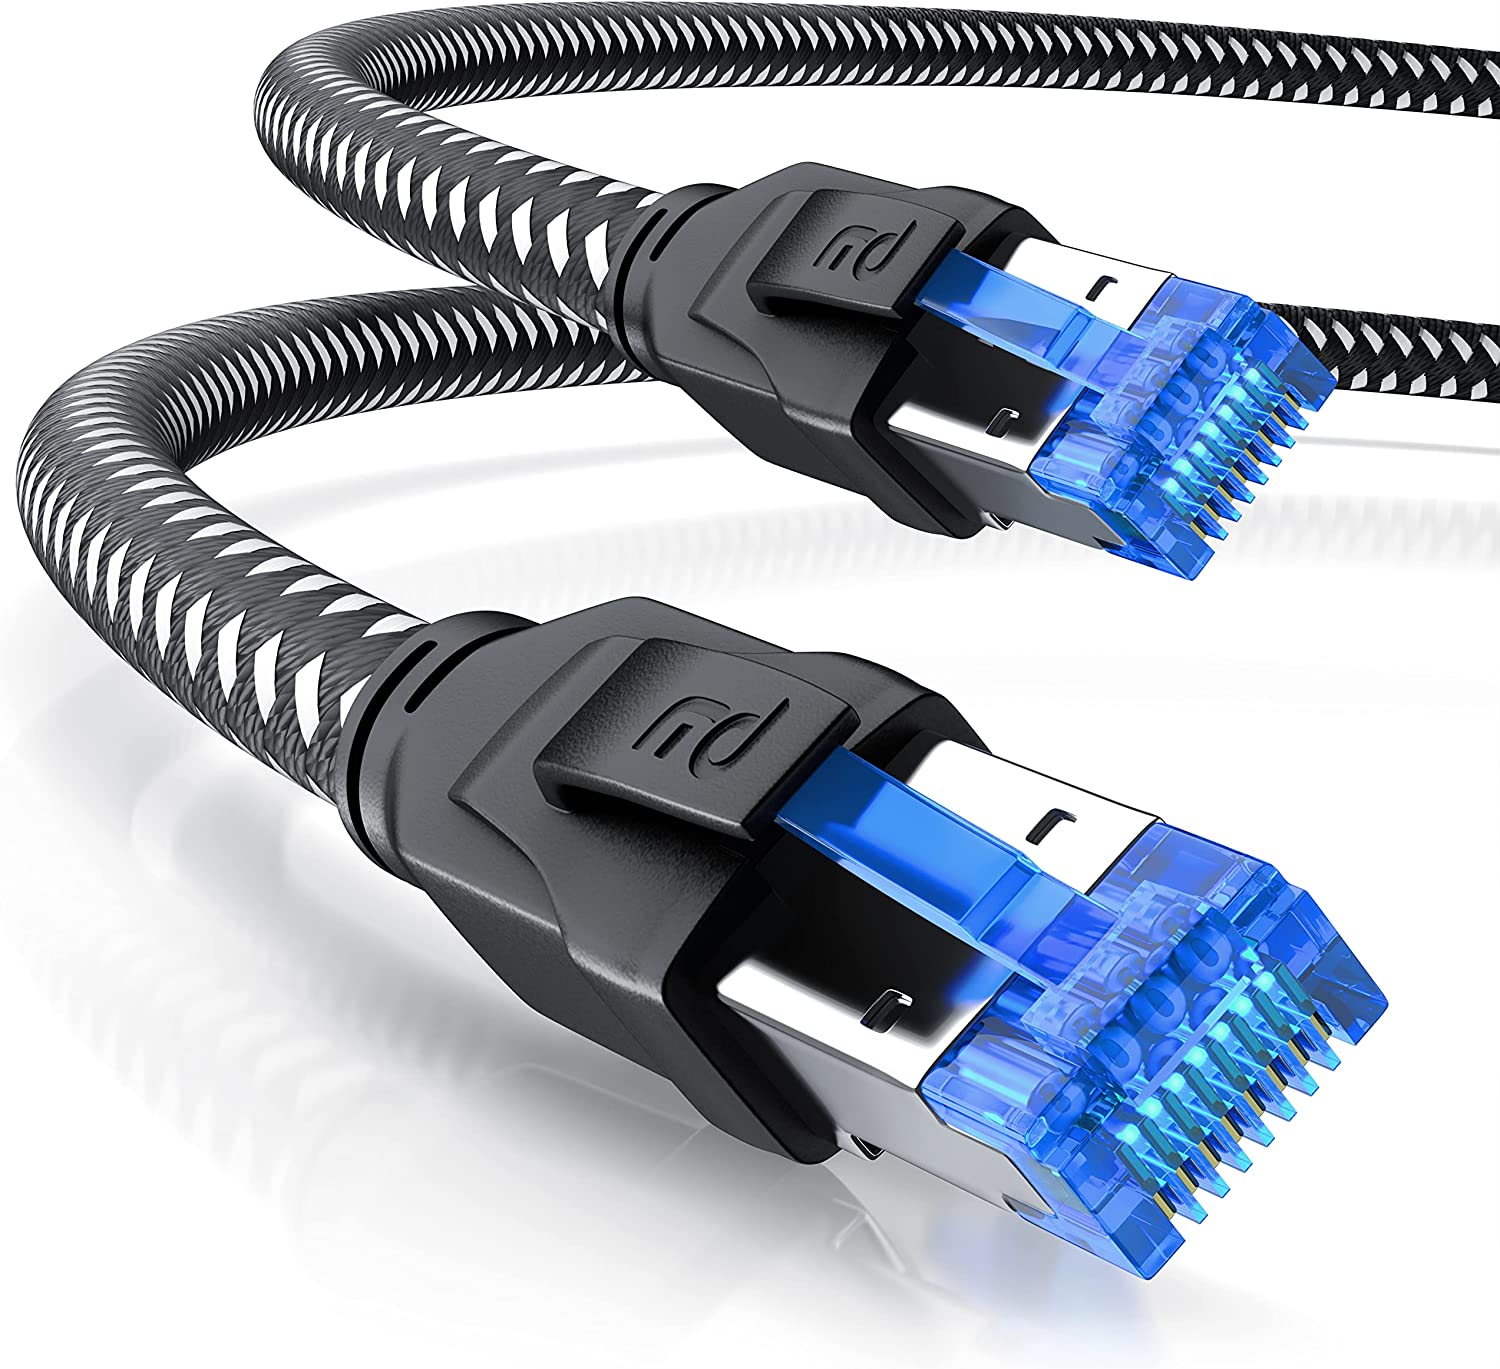 CSL - CAT 8 Netzwerkkabel – günstiges Netzwerkkabel für 10 Gbit Ethernet